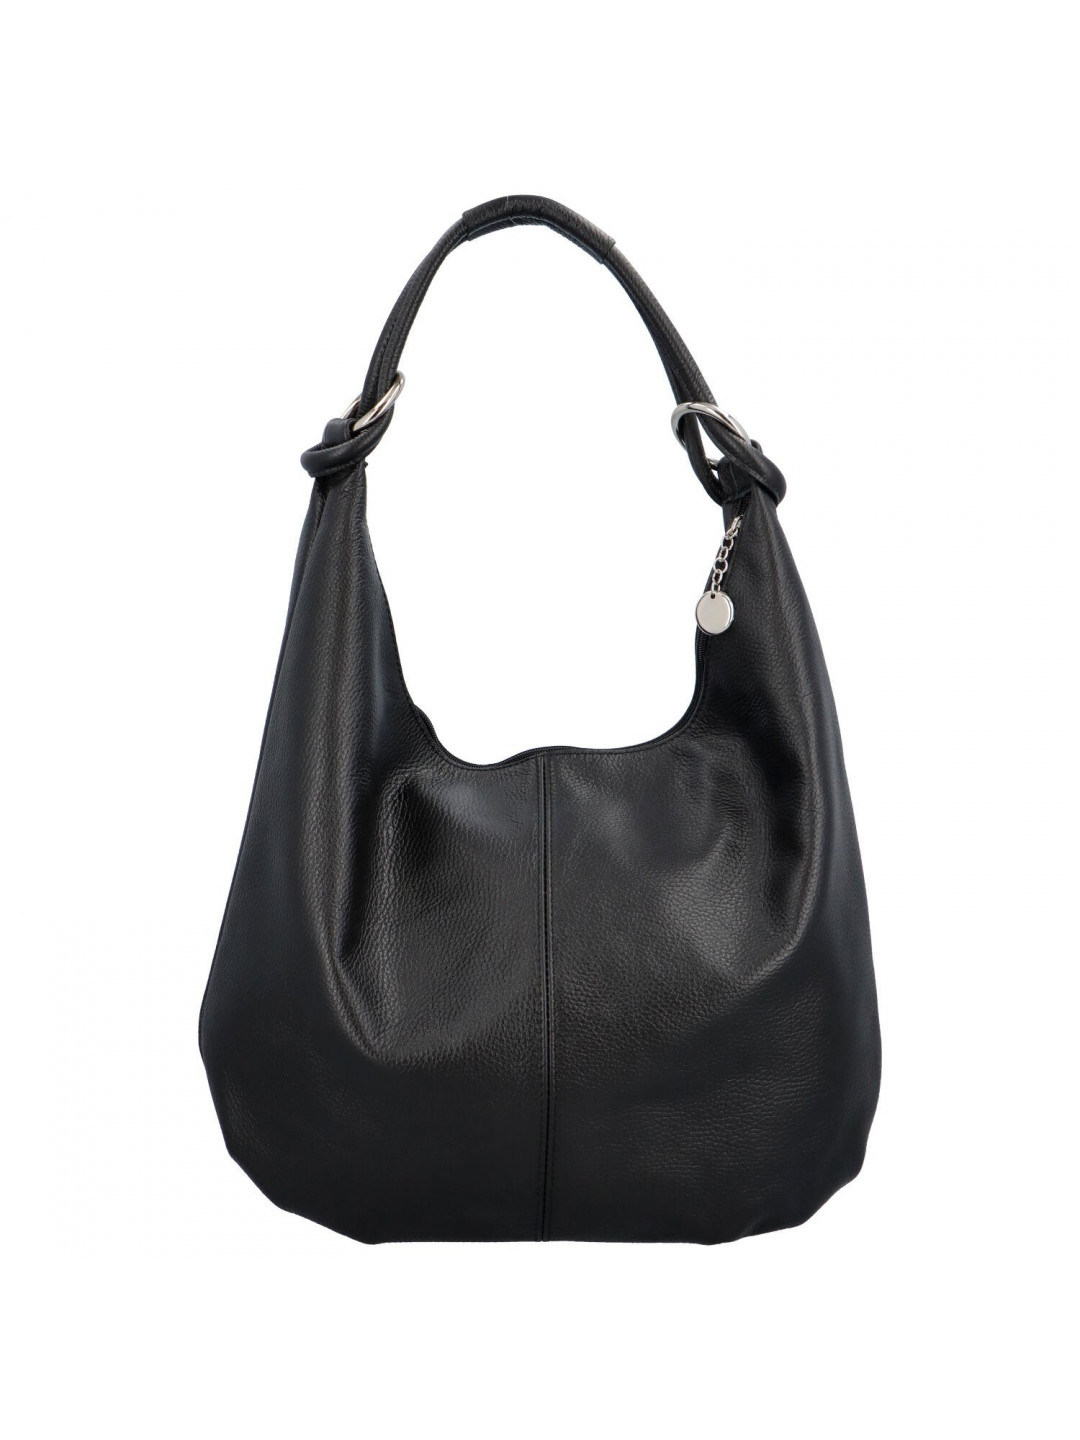 Dámská kožená kabelka přes rameno černá – Delami Avera